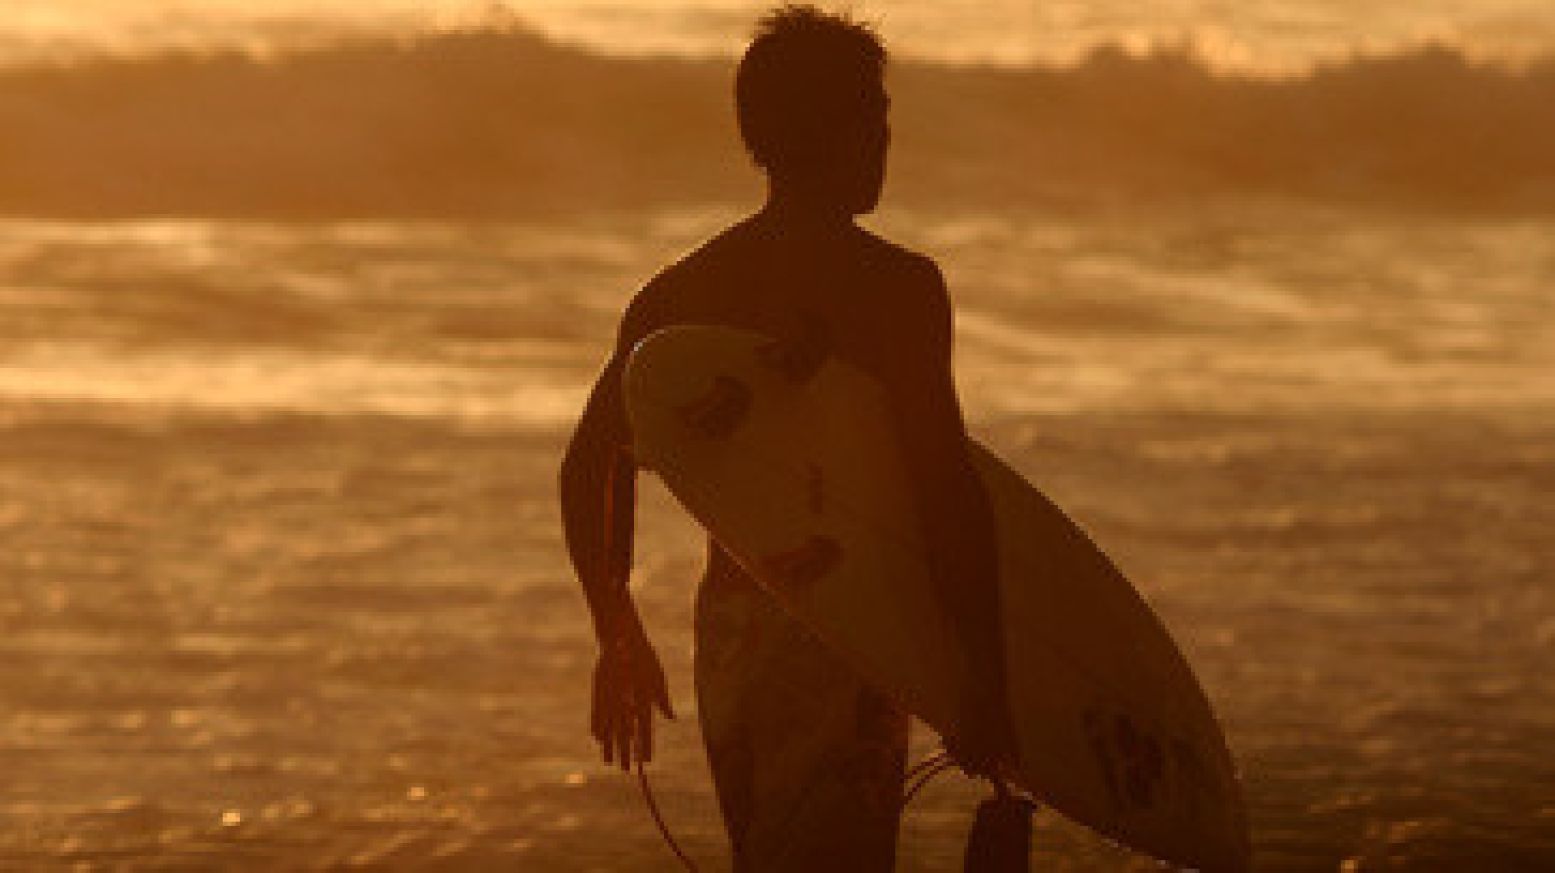 Of huur een surfplank en ga op eigen houtje surfen. Foto:  Flickr / Will Master .